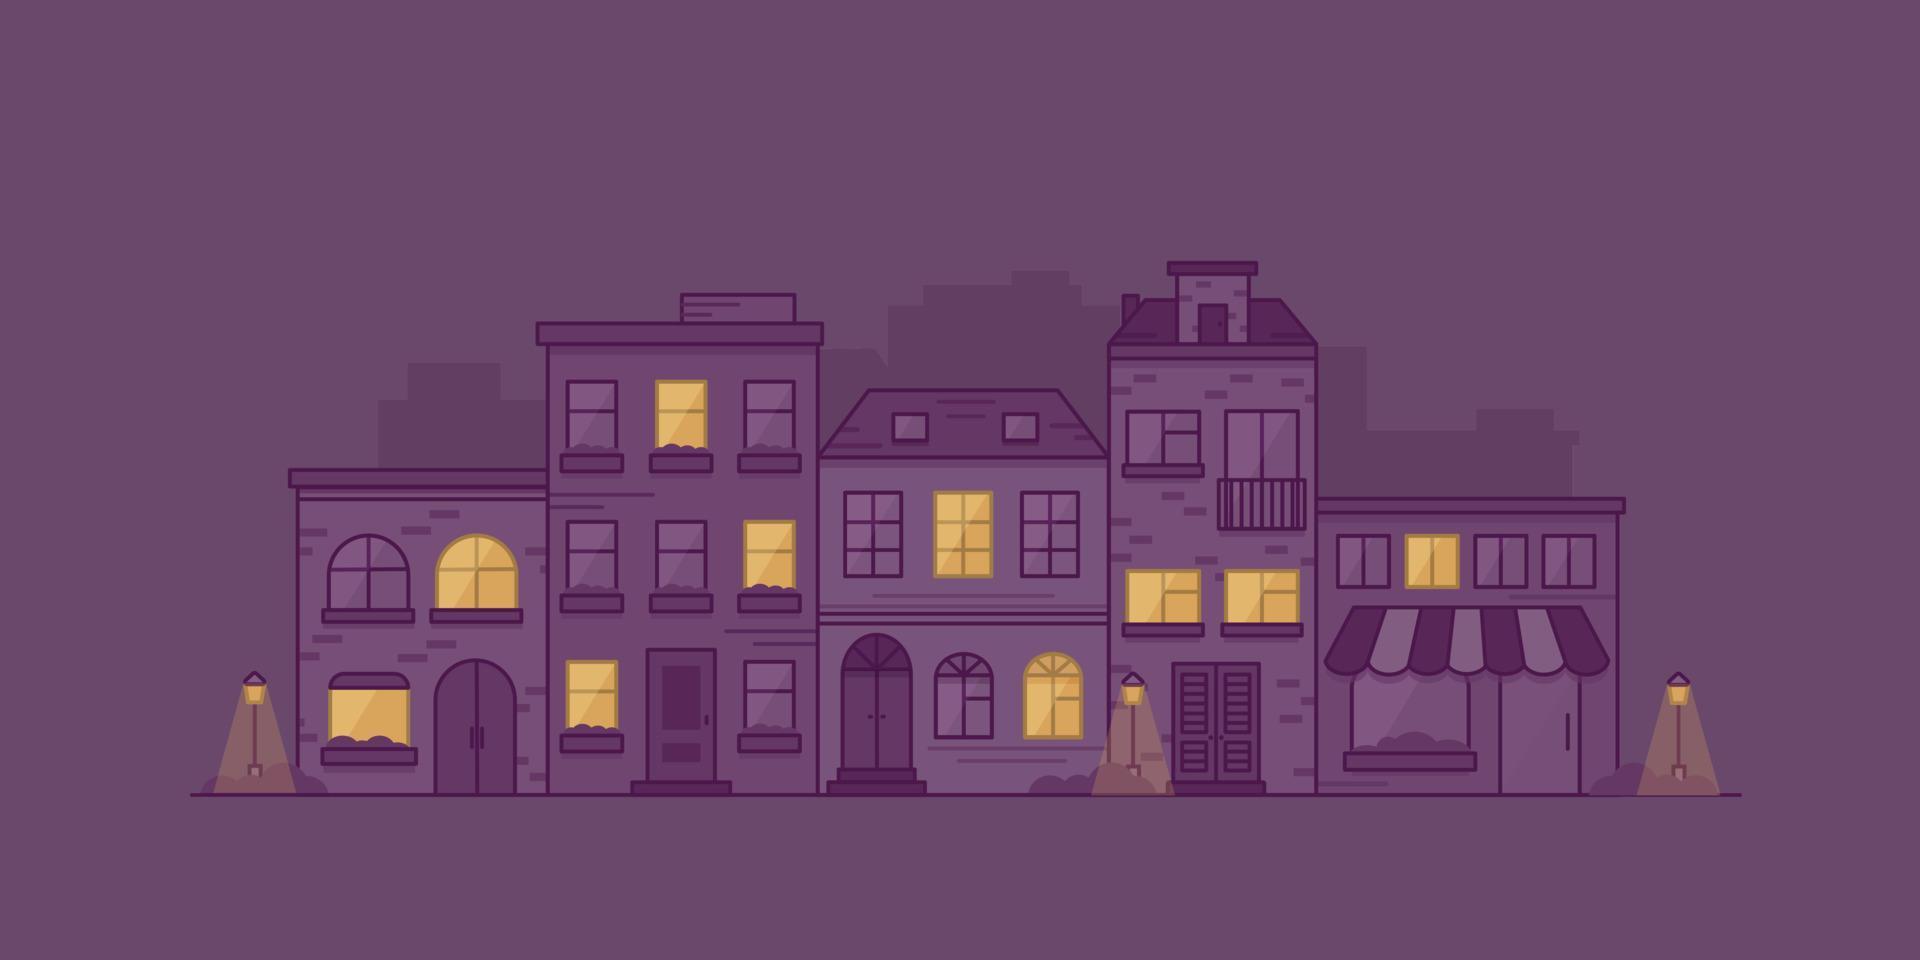 stadsbild med radhus, lyktor och buskar på natten. stadsgata med byggnadsfasader. vektor illustration i linjär stil.